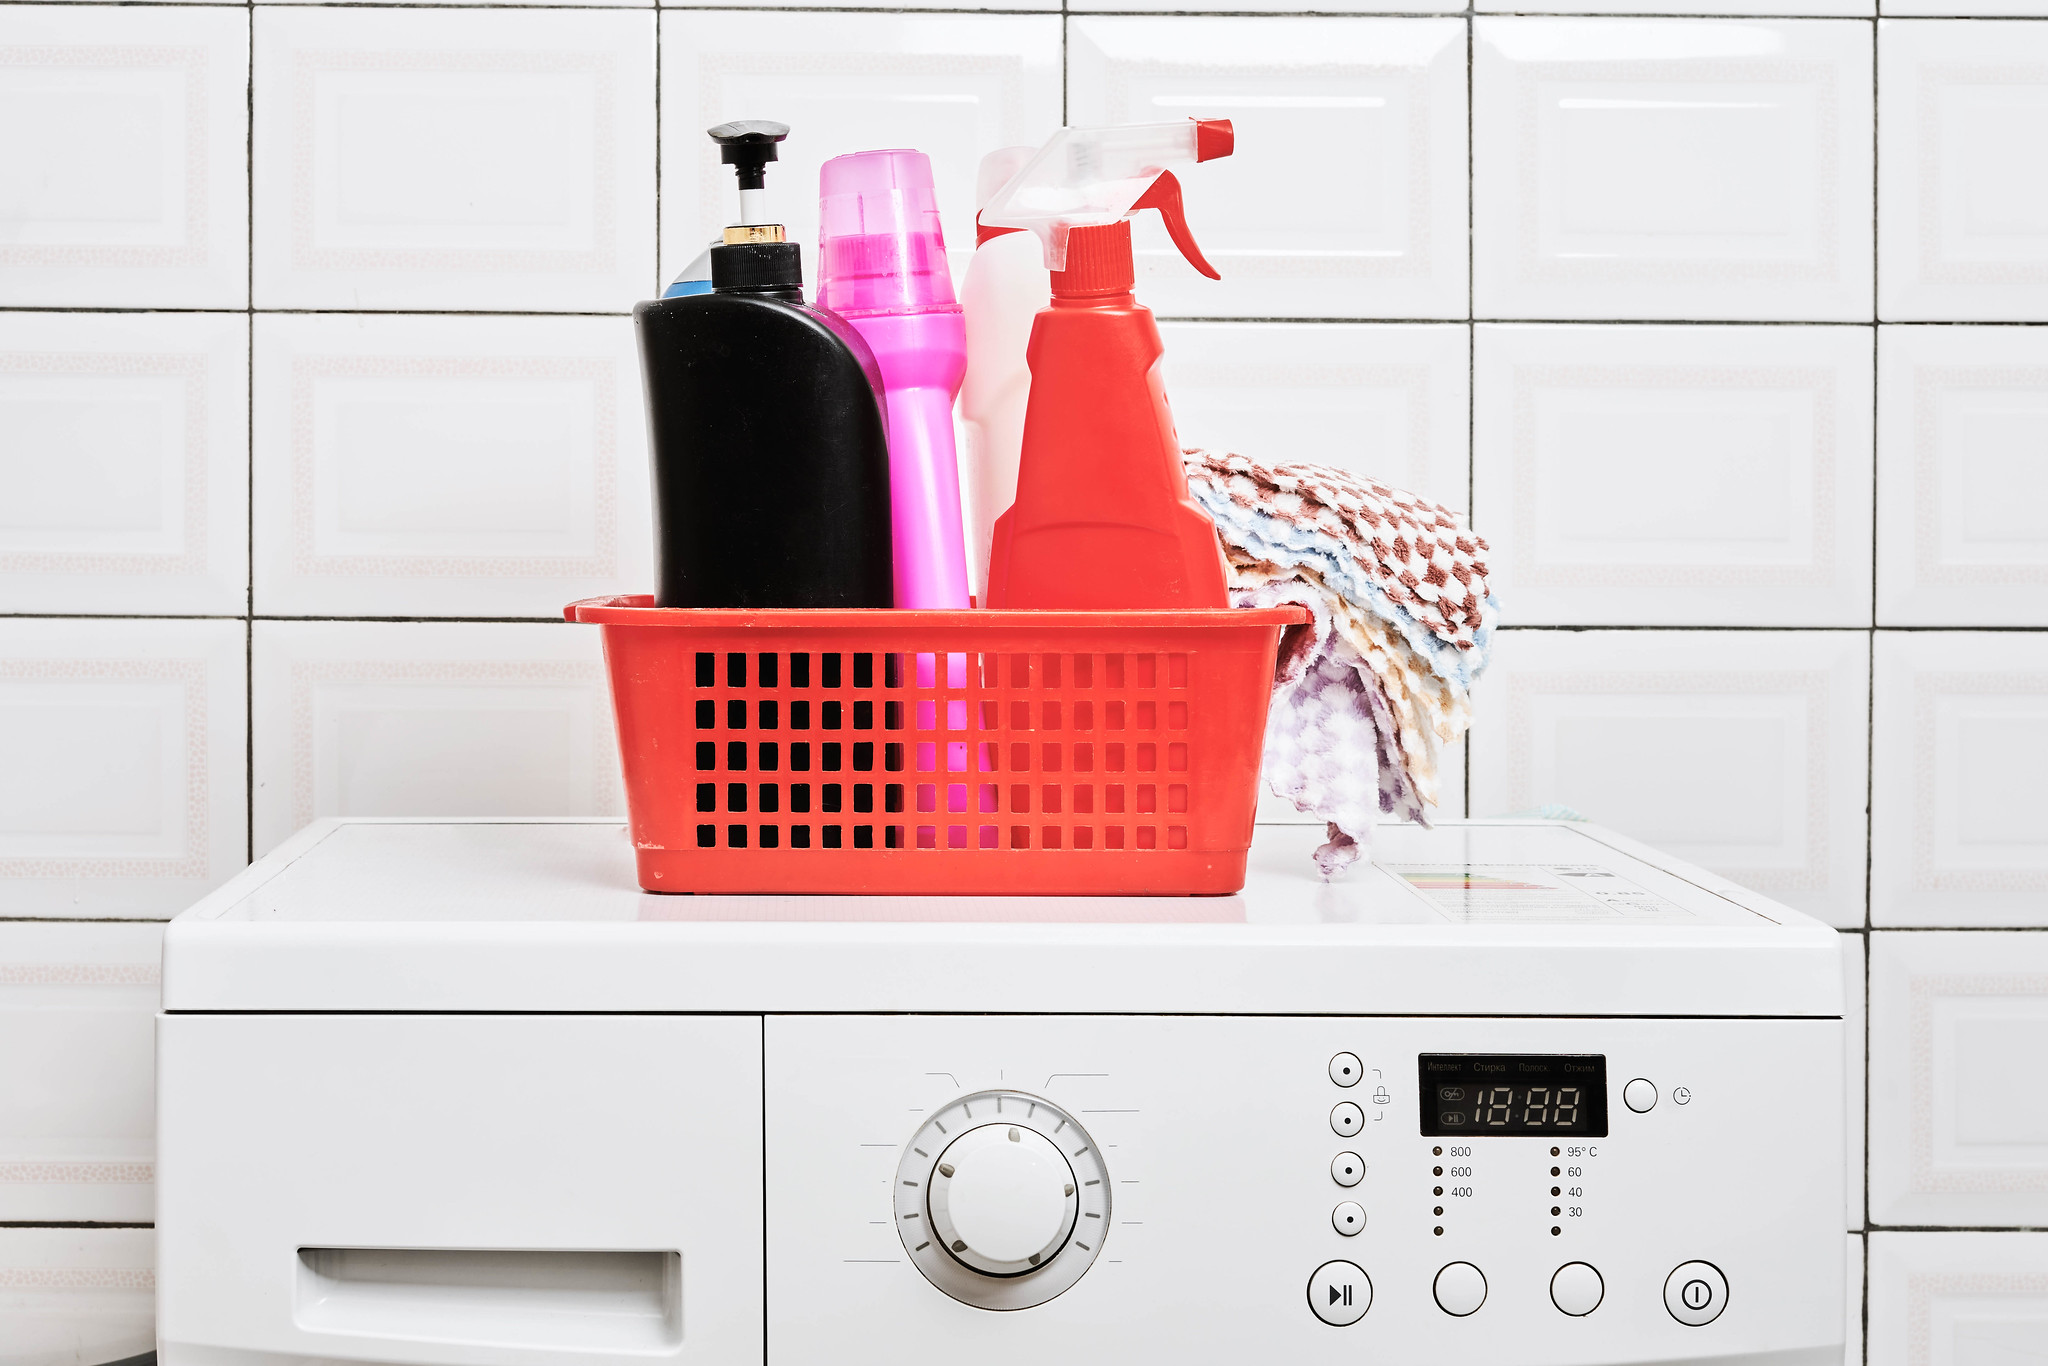 Basket of laundry products on washing machine